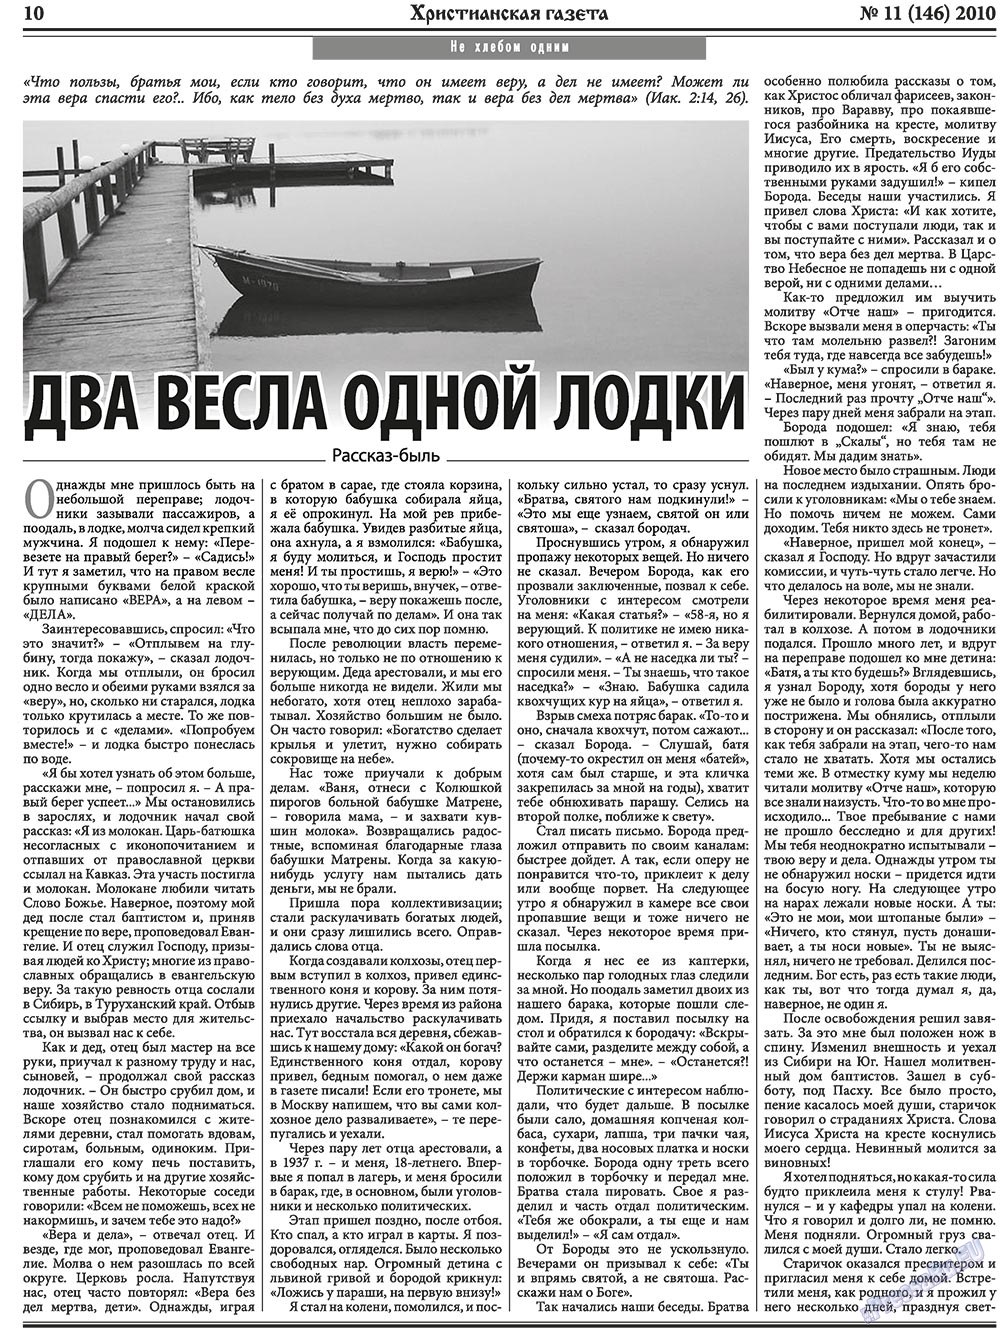 Христианская газета, газета. 2010 №11 стр.10